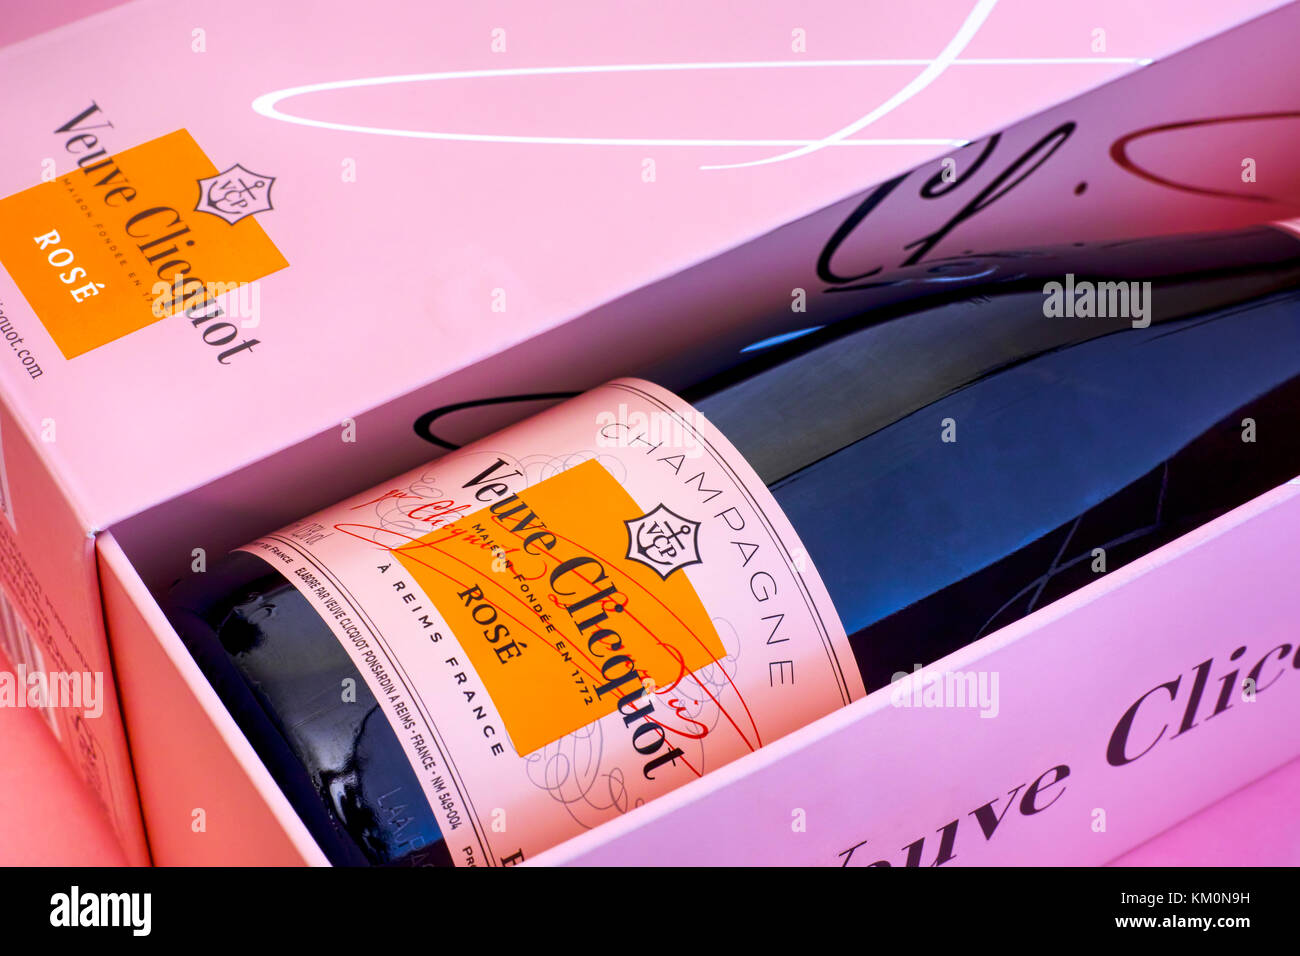 Tambow, Russische Föderation - Oktober 06, 2017 in der Nähe des Champagne Veuve Clicquot Rose Flasche in Pink. Rosa Hintergrund. Studio gedreht. Stockfoto